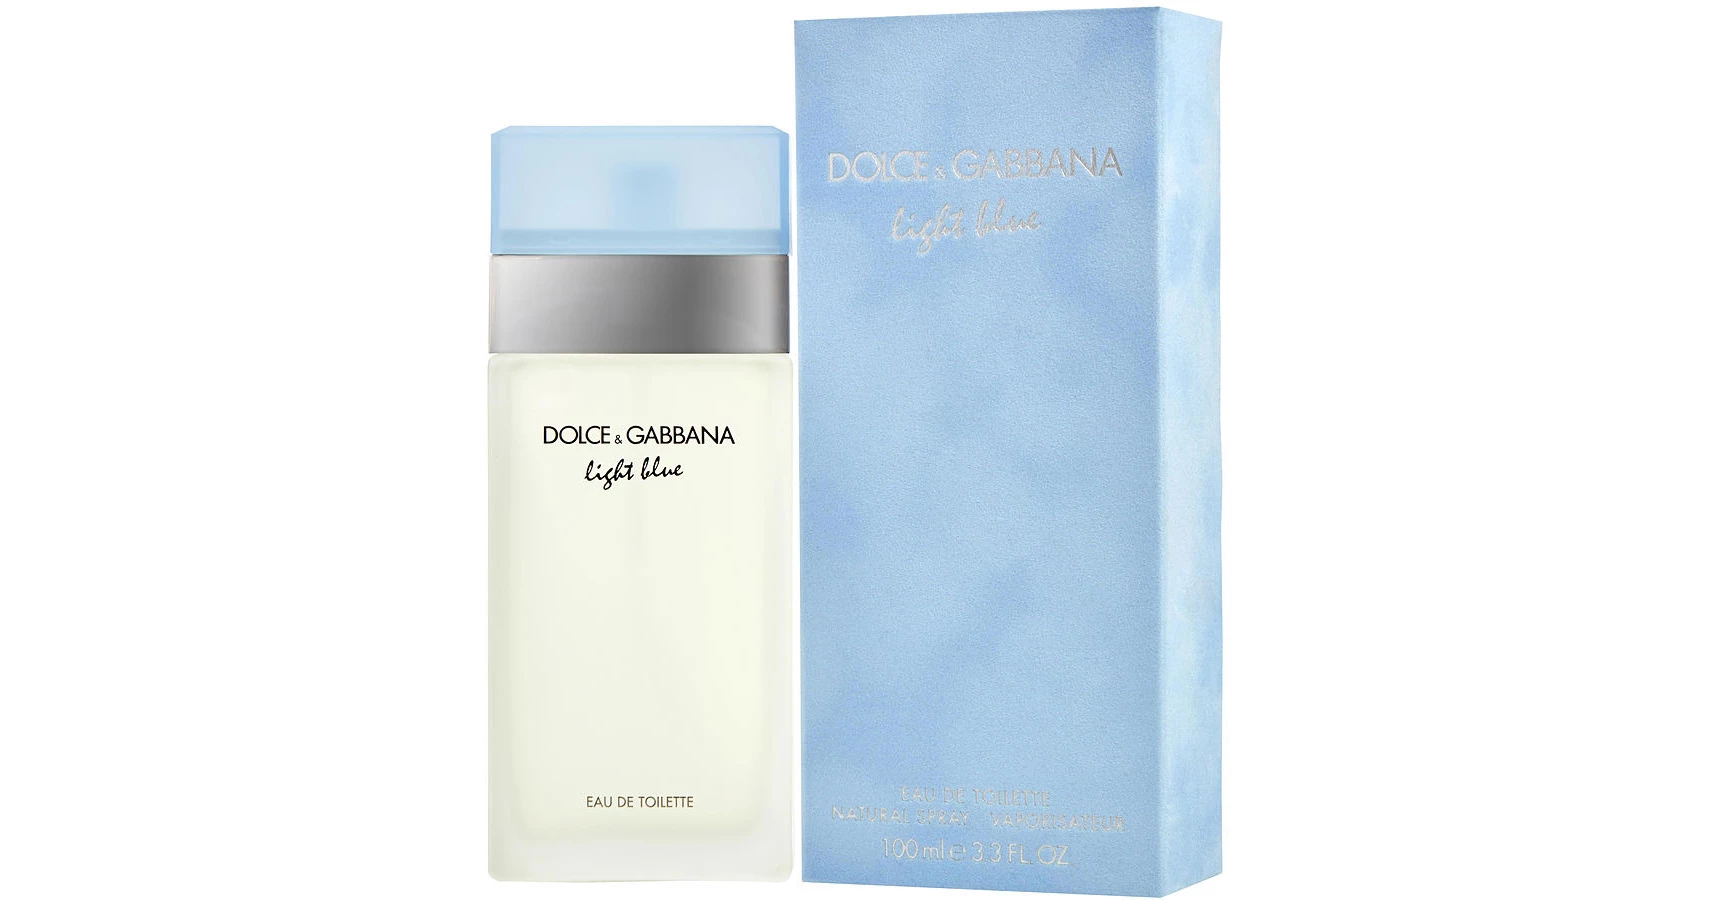 Dolce & Gabbana Light Blue EDT 50ml. Light Blue Dolce Gabbana для женщин. Дольче Габбана Лайт Блю женские 50 мл. Духи Дольче Габбана Лайт Блю цитрусовый.